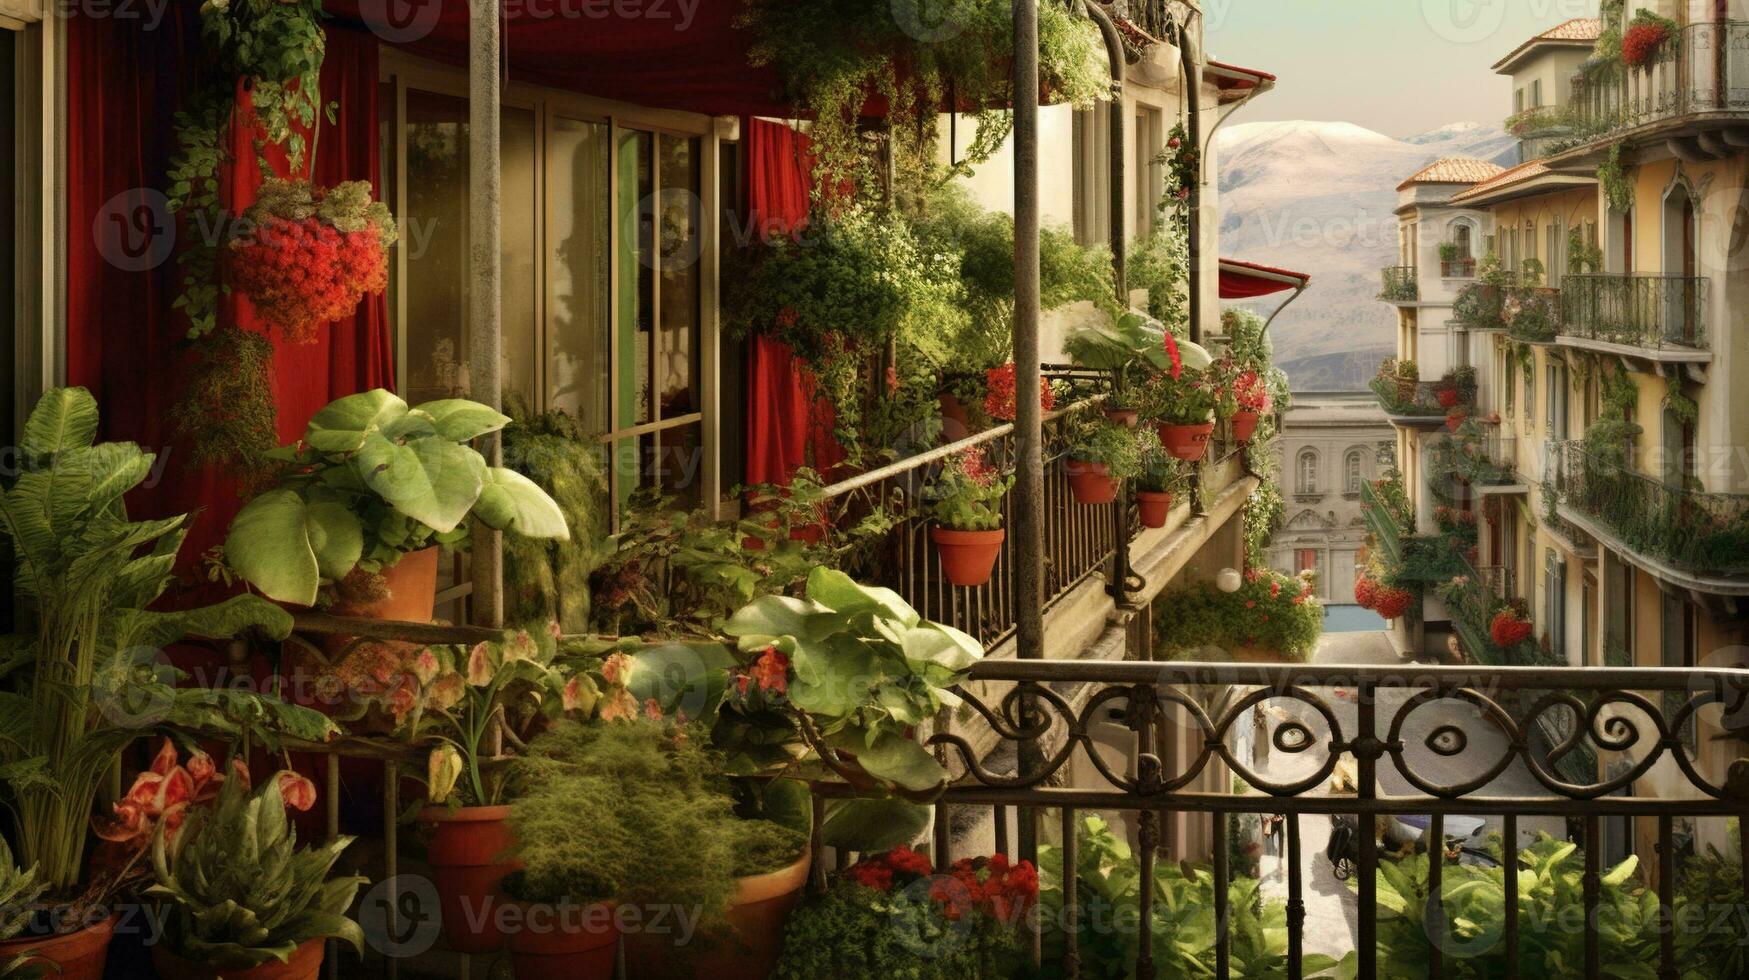 generatief ai, mooi balkon omringd door een tropisch stijl tuin, bloeiend bloemen en groen planten foto